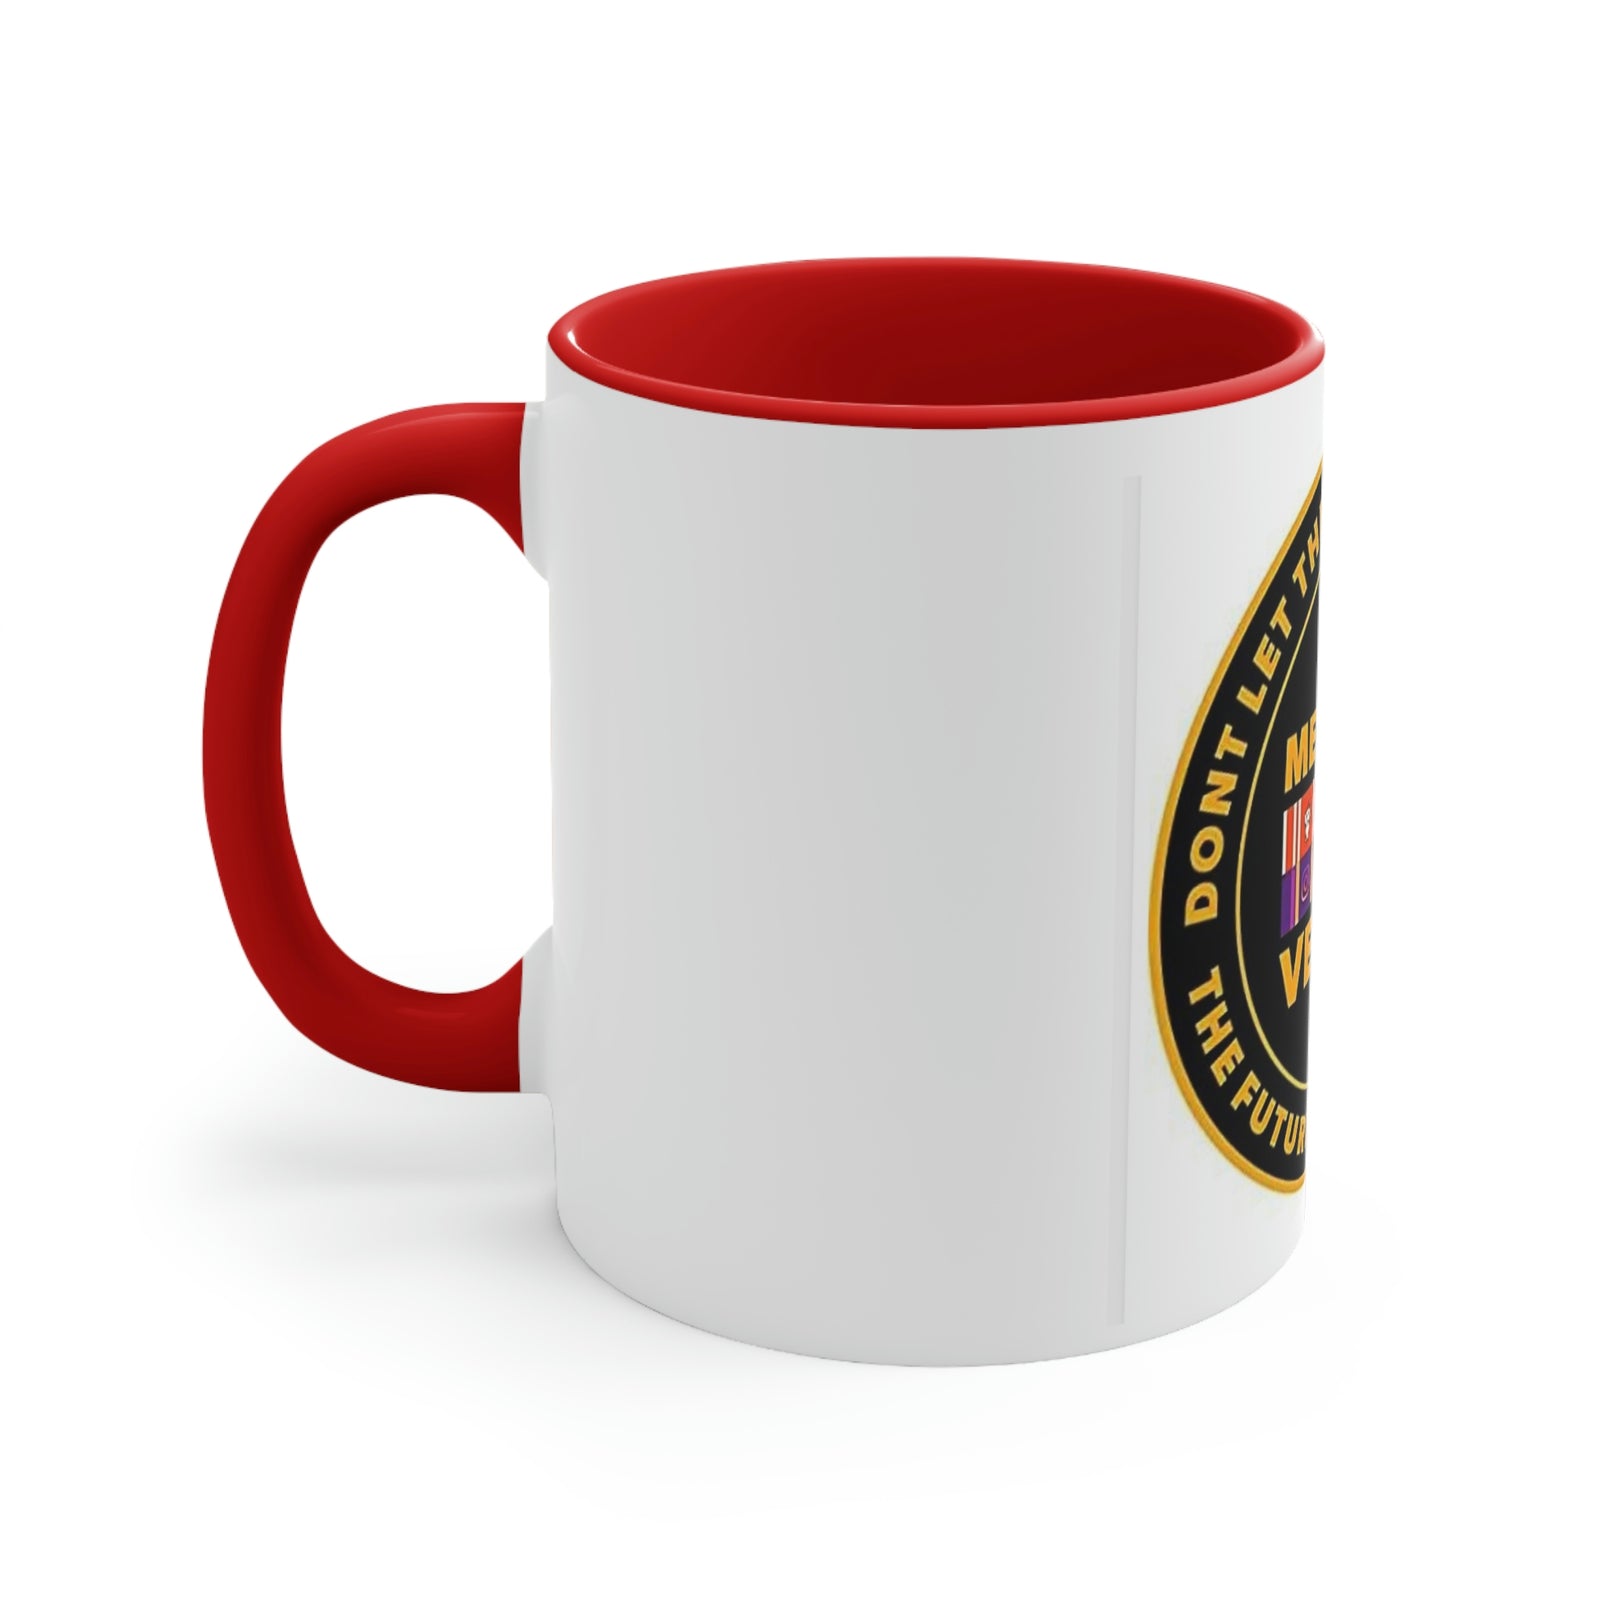 Meme War Coffee Mug, 11oz